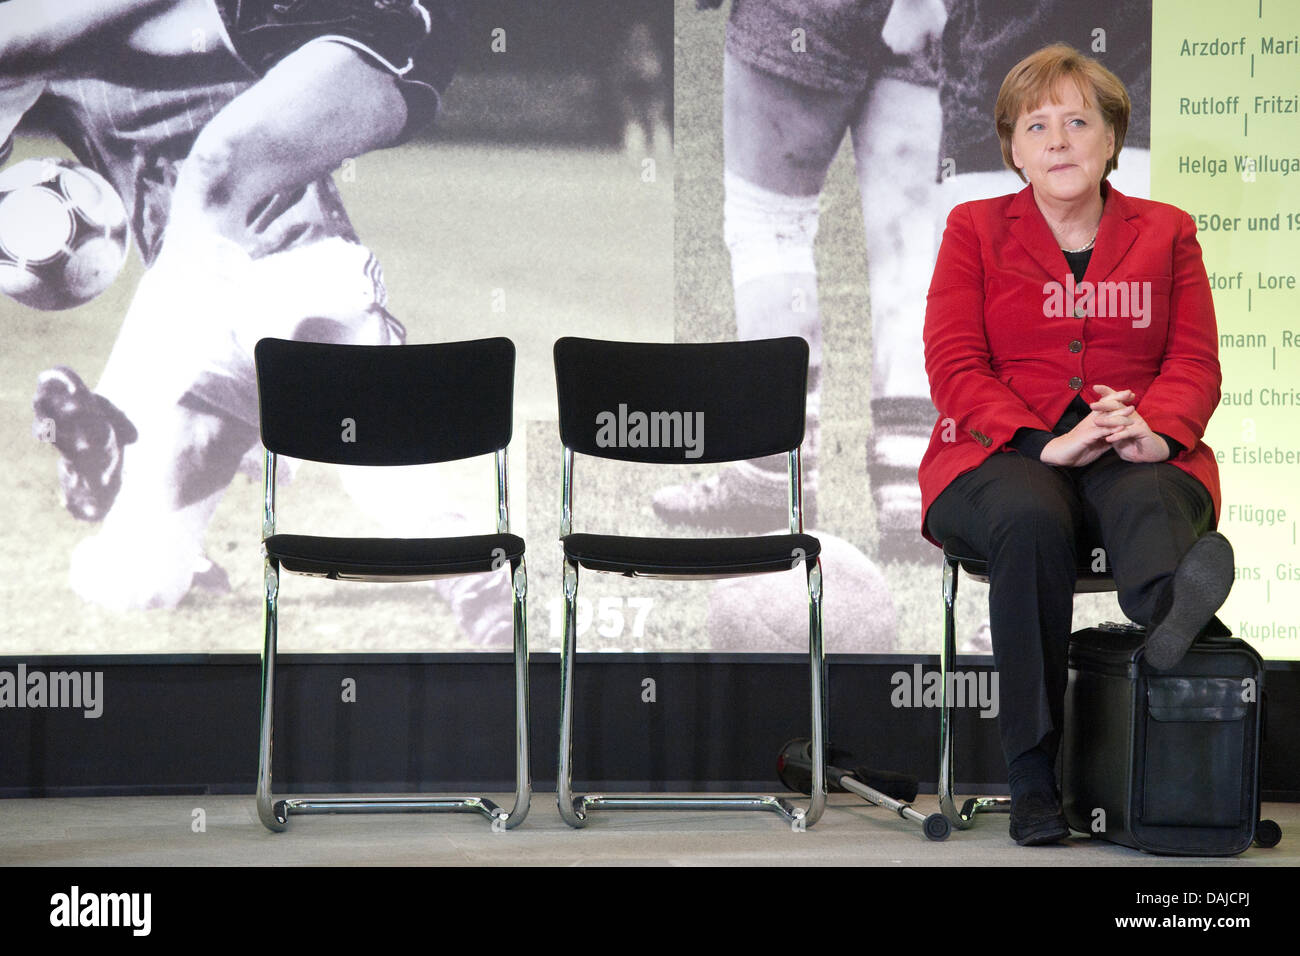 La chancelière allemande, Angela Merkel, est situé en face de la partition d'une photo dans la chancellerie allemande à Berlin, Allemagne, 5 avril 2011. Le Chancelier allemand s'est félicité de la women's national allemand de l'équipe de football. PHOTO : TOBIAS KLEINSCHMIDT Banque D'Images